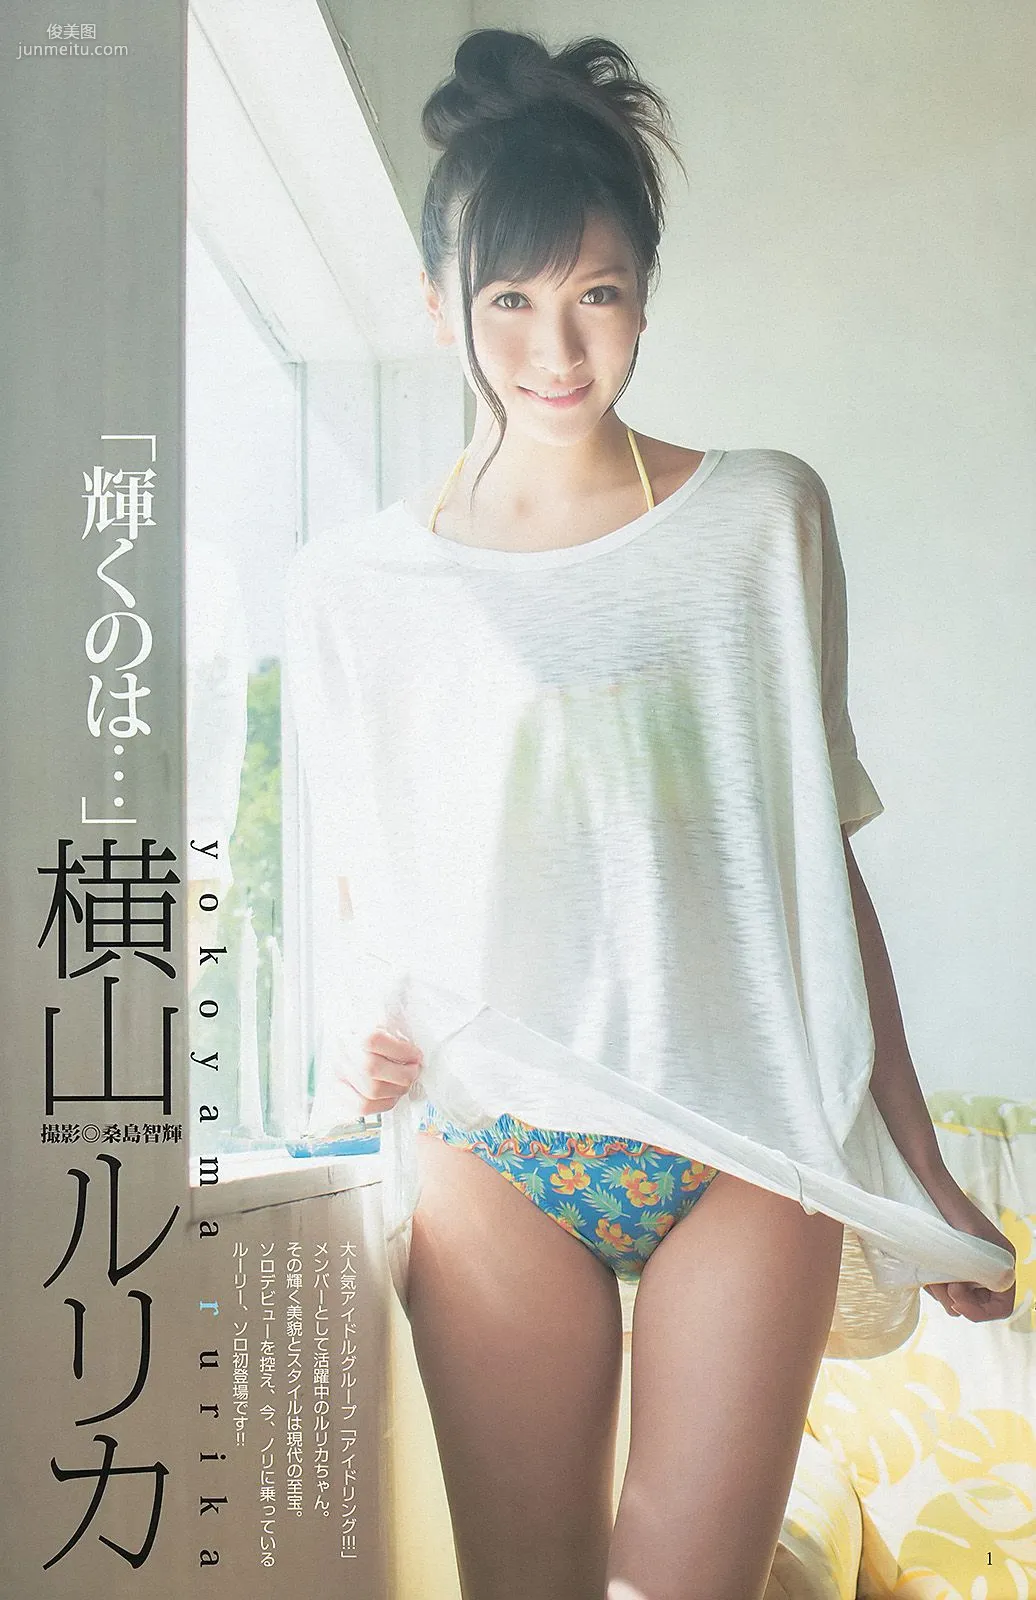 渡辺美優紀 横山めぐみ 上西恵 [Weekly Young Jump] 2013年No.27 写真杂志8